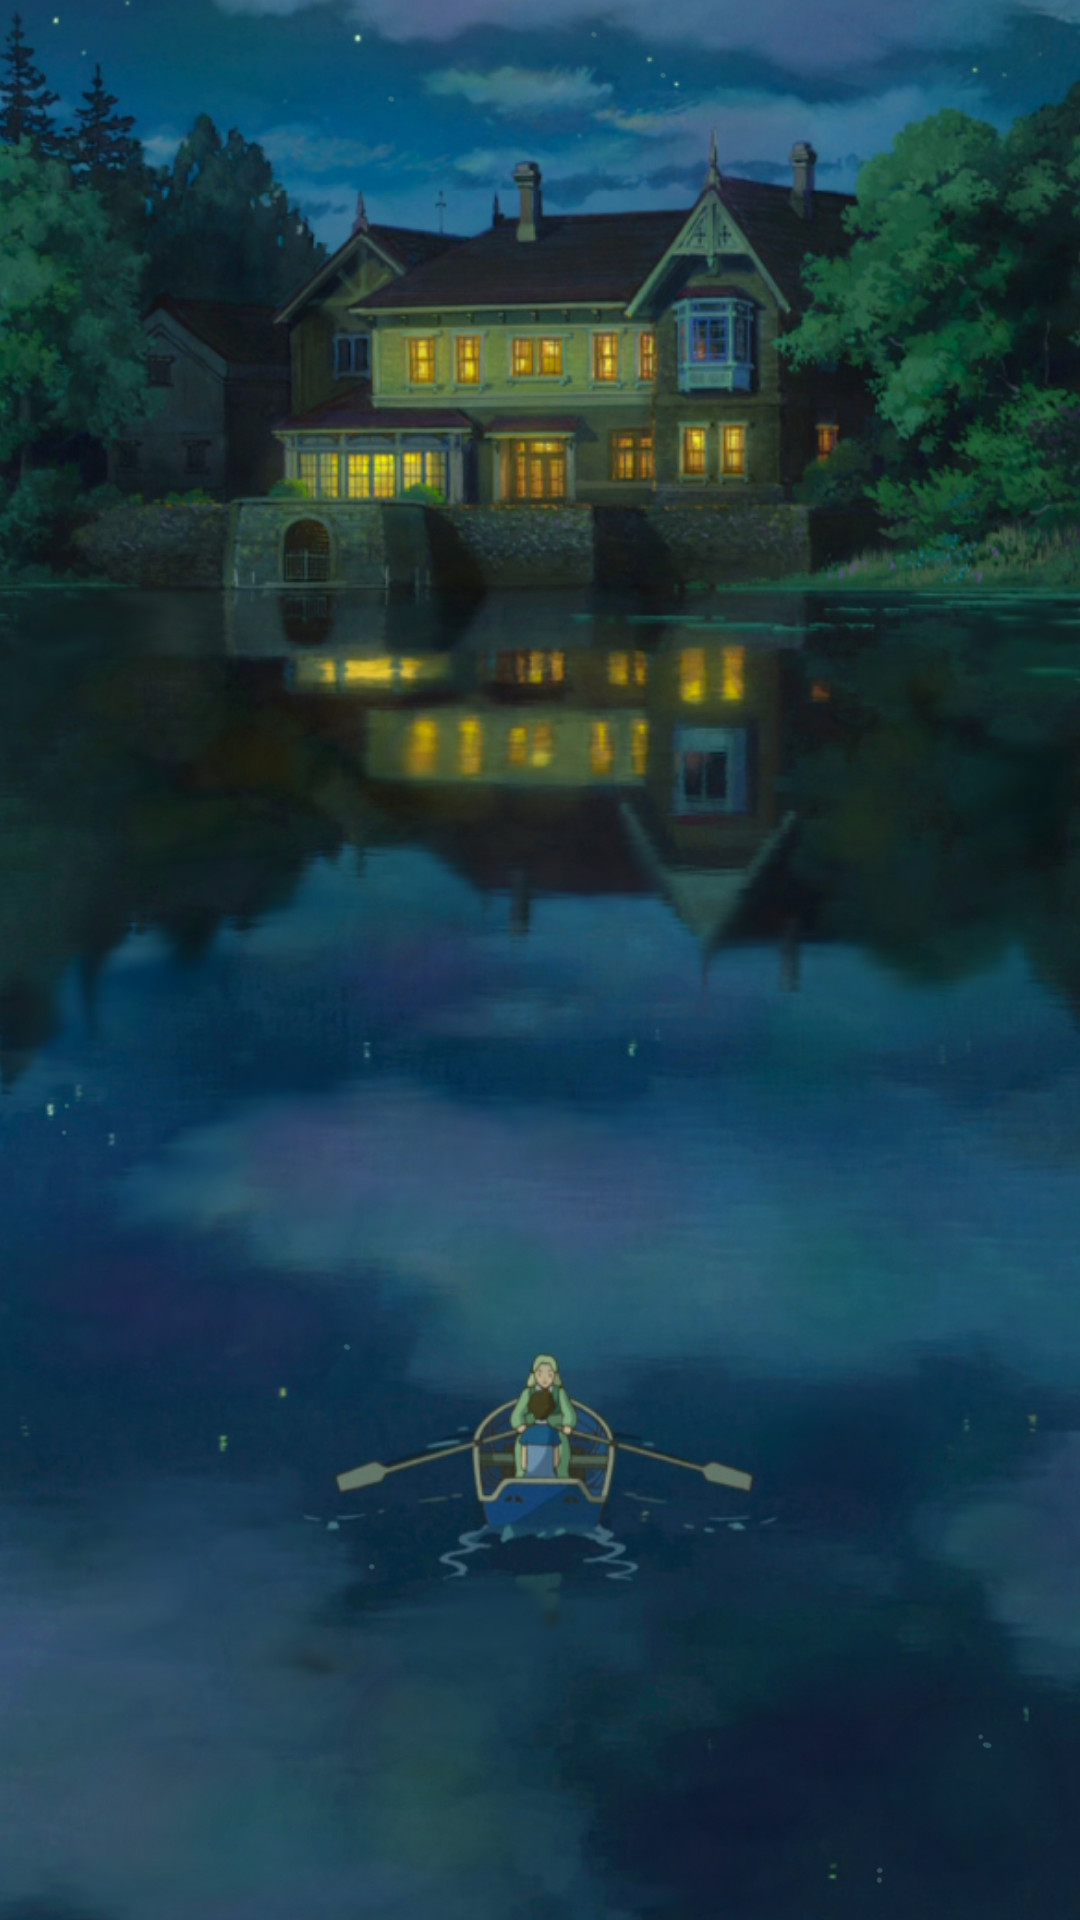 Studio Ghibli Iphone Wallpaper